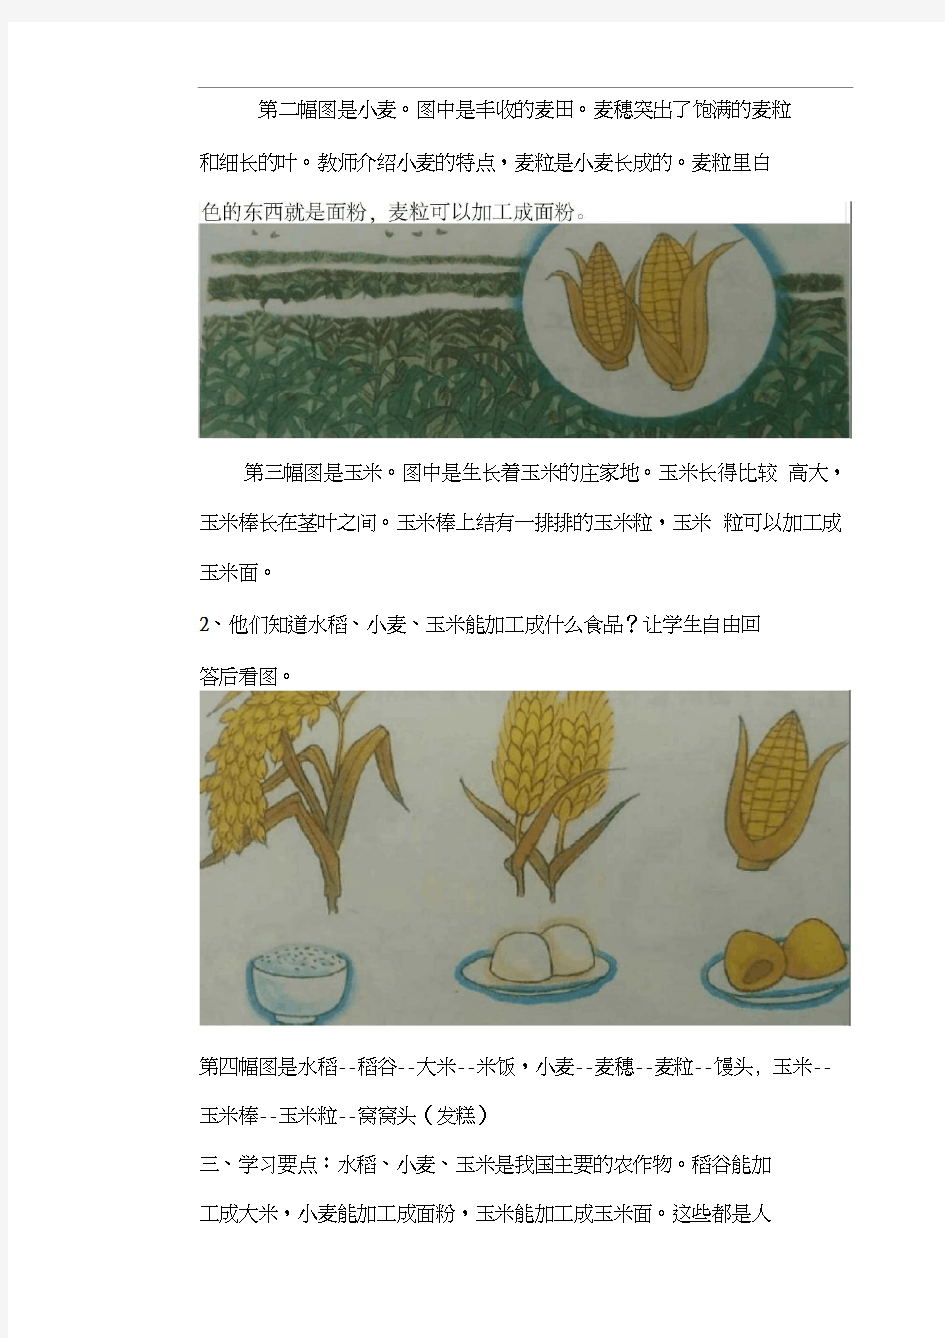 6水稻小麦玉米